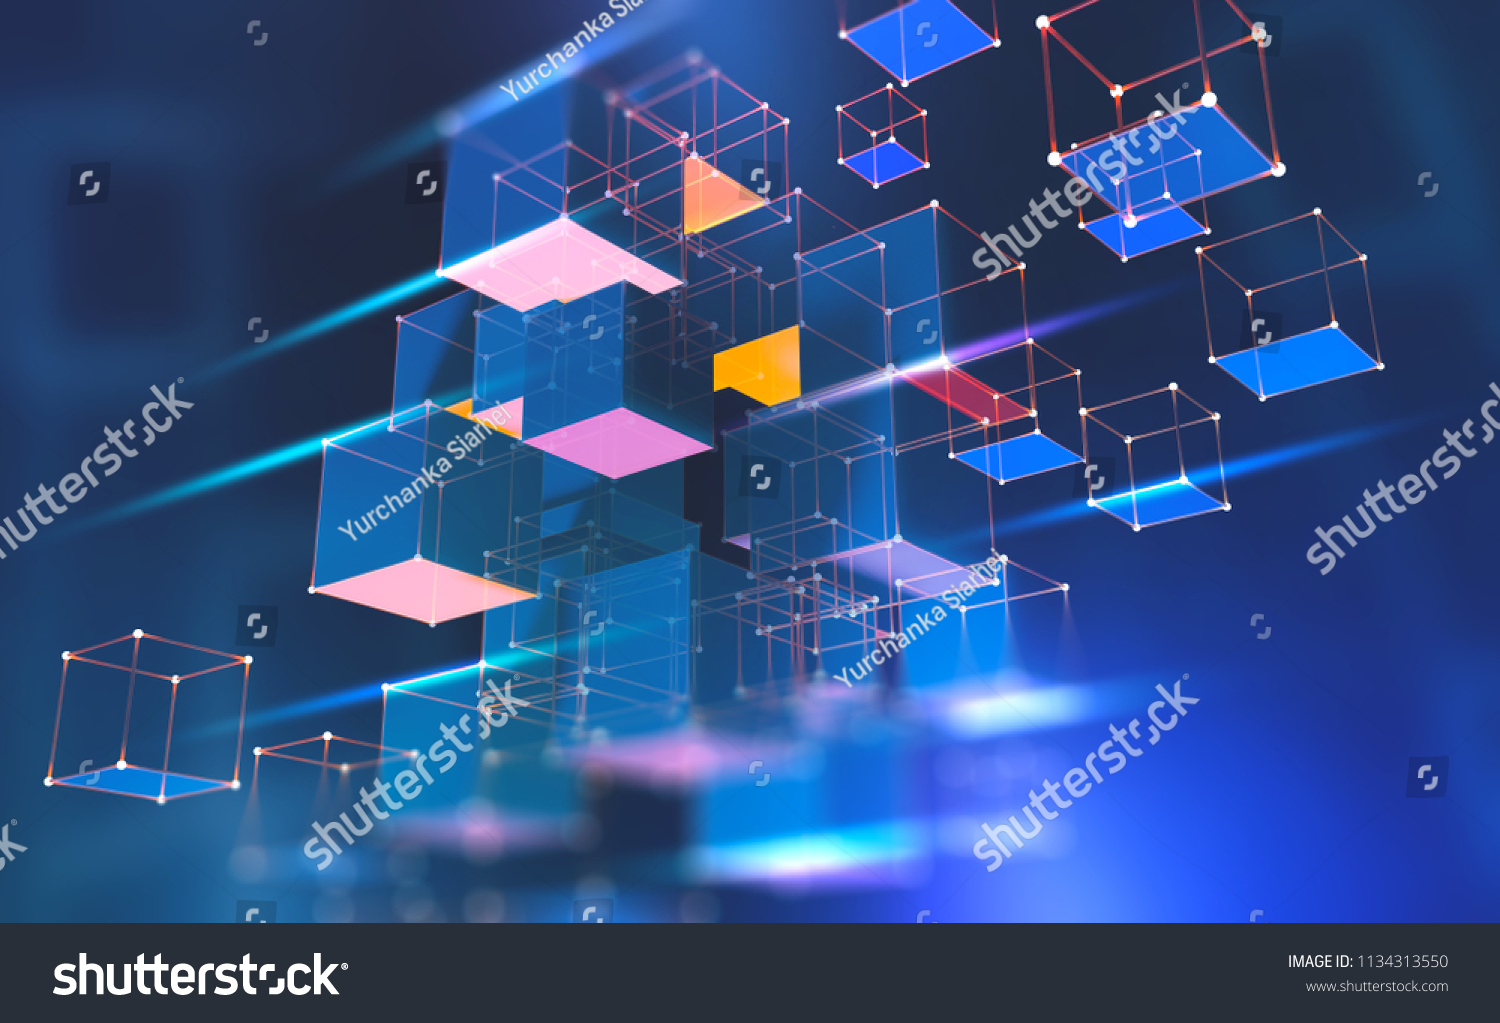 Blockchainテクノロジー サイバー空間の情報ブロック 分散ネットワーク 技術的背景に3dイラスト のイラスト素材